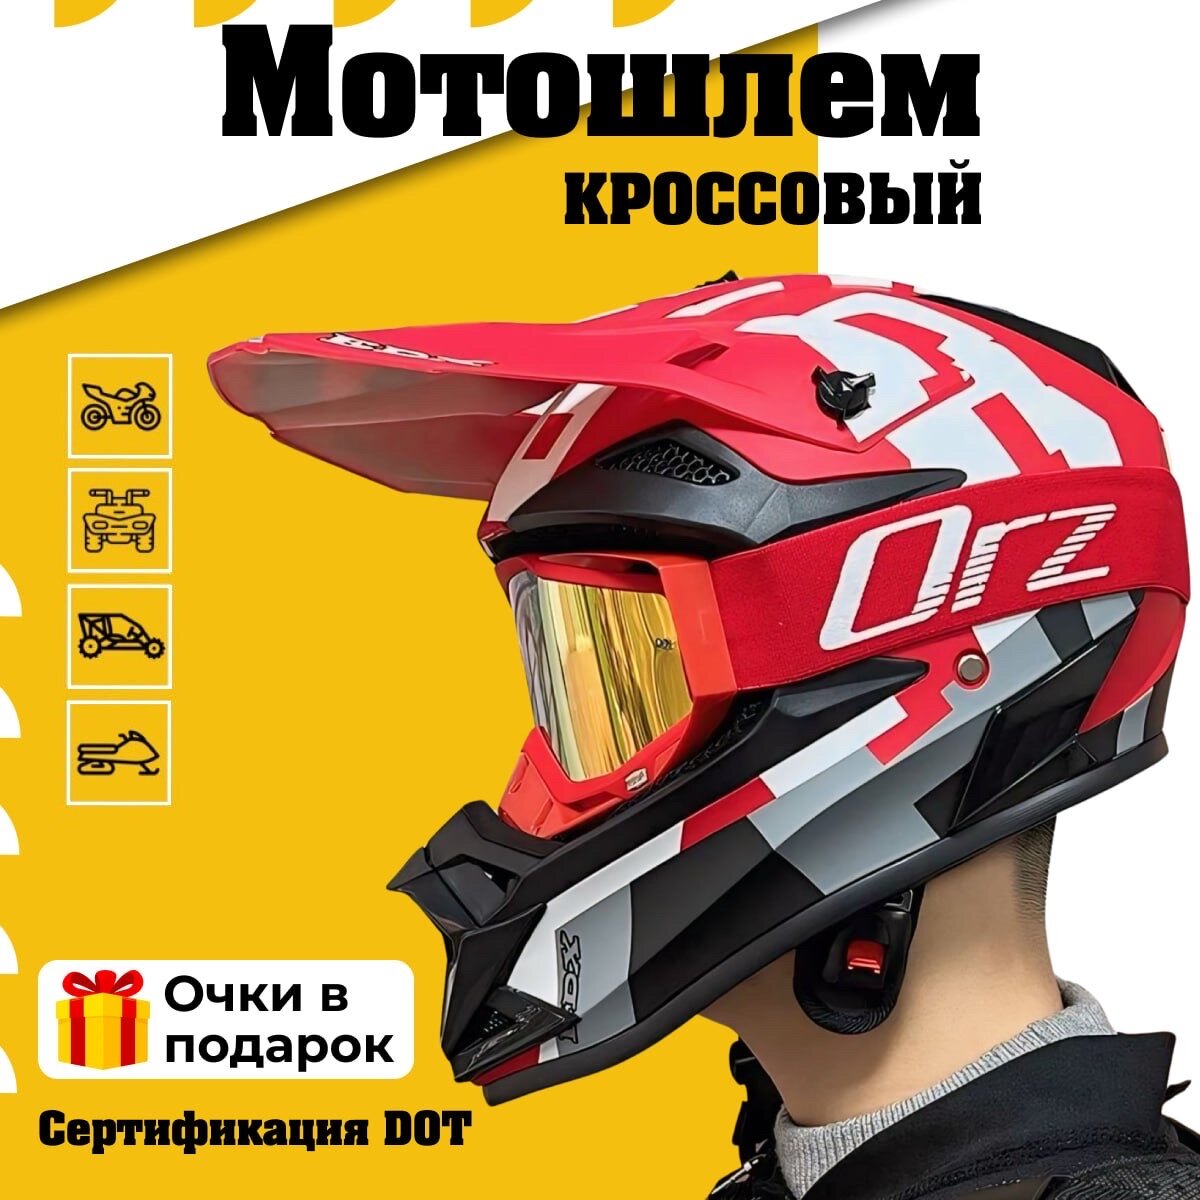 Шлем кроссовый для мотоцикла квадроцикла мотошлем питбайк EDX черный красный M